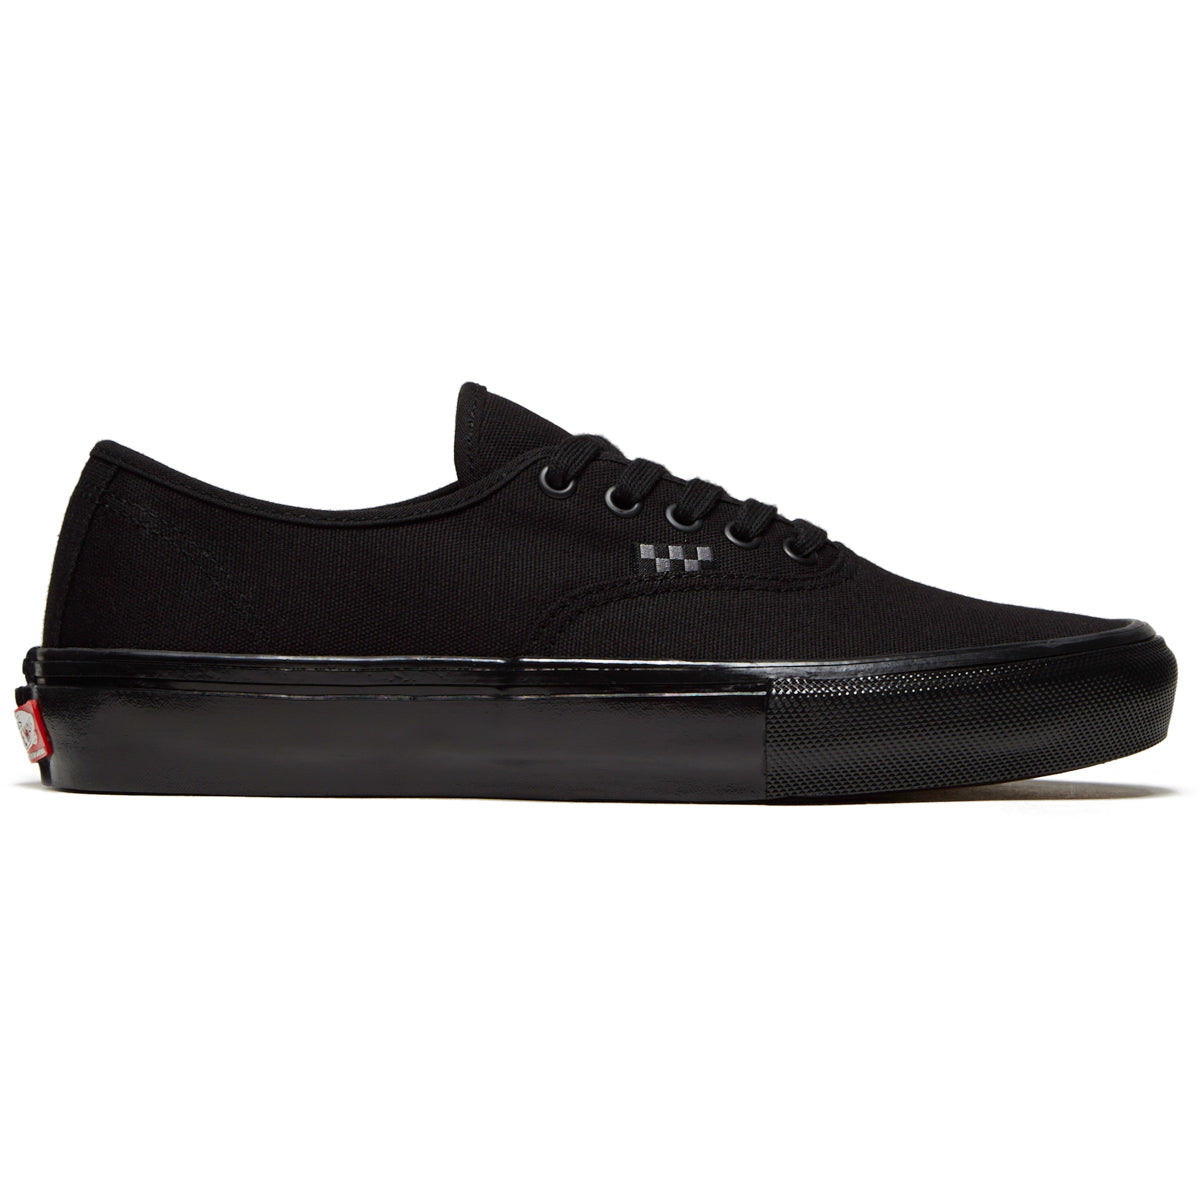 Vans Skate Authentic Shoes - Black/Black image 1